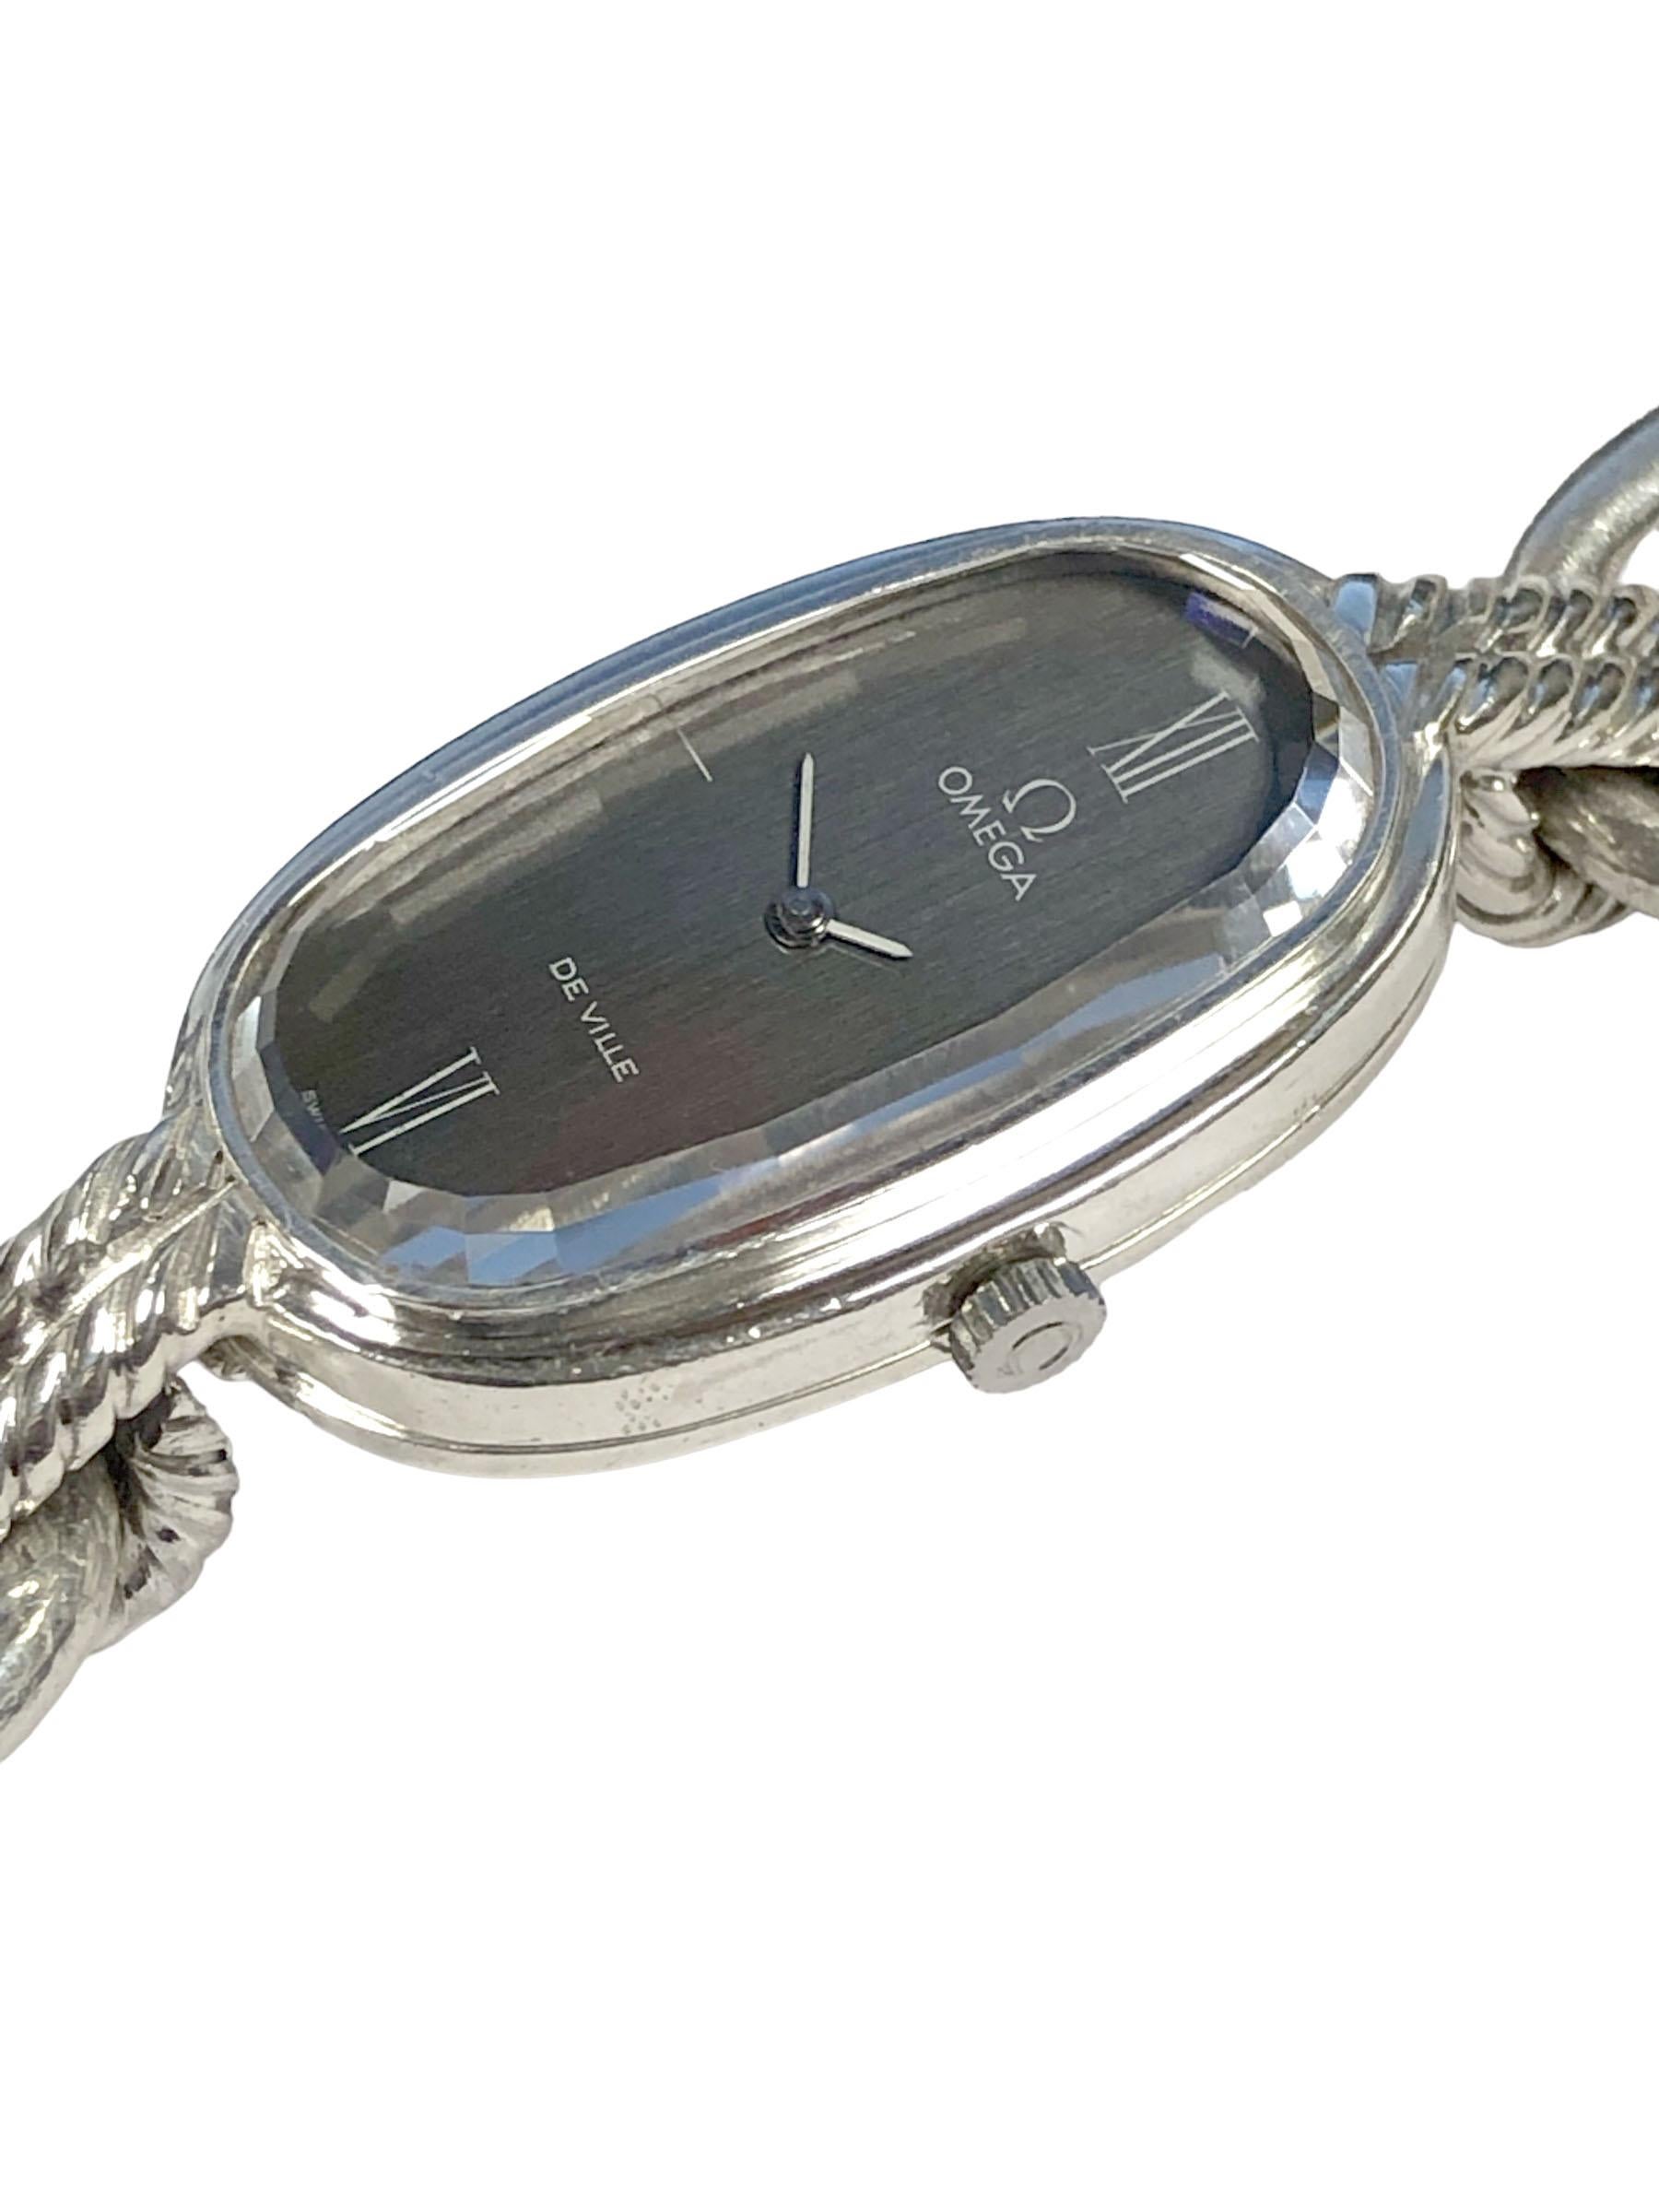 Circa 1970 Omega De Ville Sterling Silver Wrist Watch, 32 x 22 M.M. 2 piece Sterling Silver case, Mechanical, Manual wind Movement. Cadran noir avec cristal de verre épais à facettes d'origine. Bracelet en argent massif de 5/8 pouces de large, de